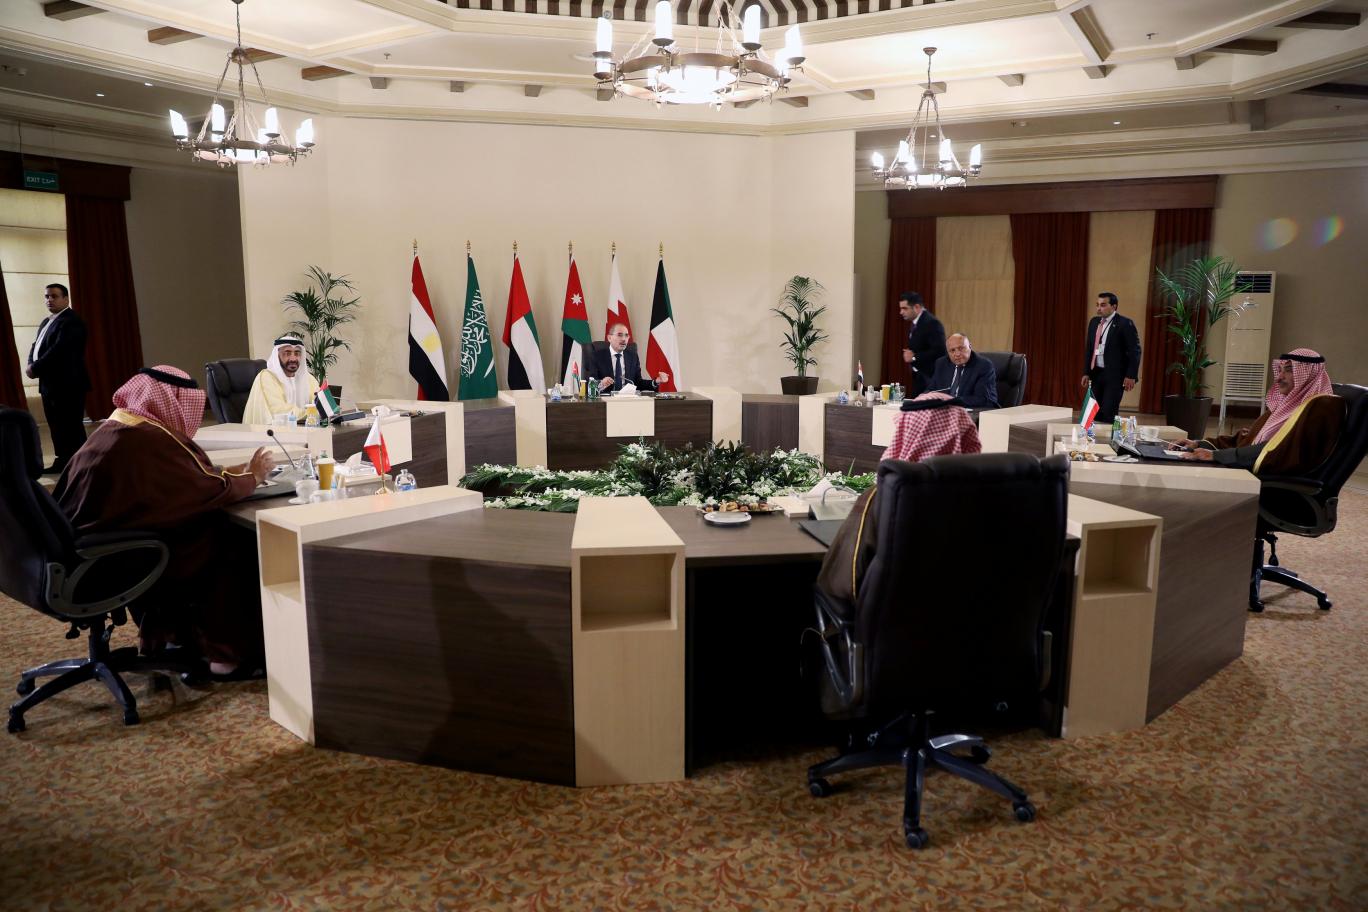   وزراء خارجية مصر والأردن والسعودية والبحرين والكويت والإمارات اجتمعوا اليوم لمدة 9 ساعات في منطقة البحر الميت